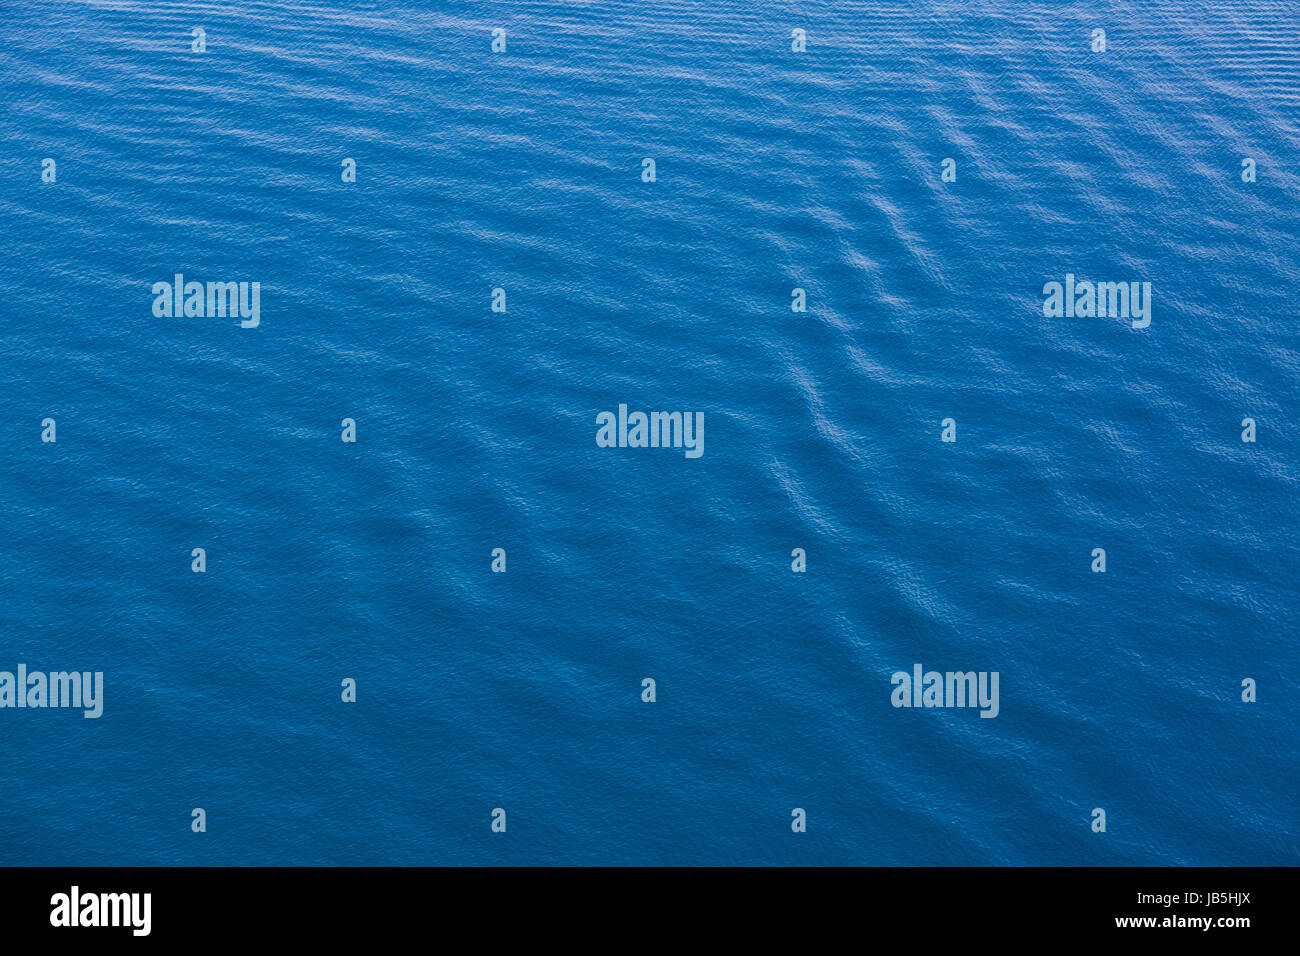 Calme acque torbide, foto dall'alto che mostra la superficie del mare, sfondo astratto e carta da parati Foto Stock